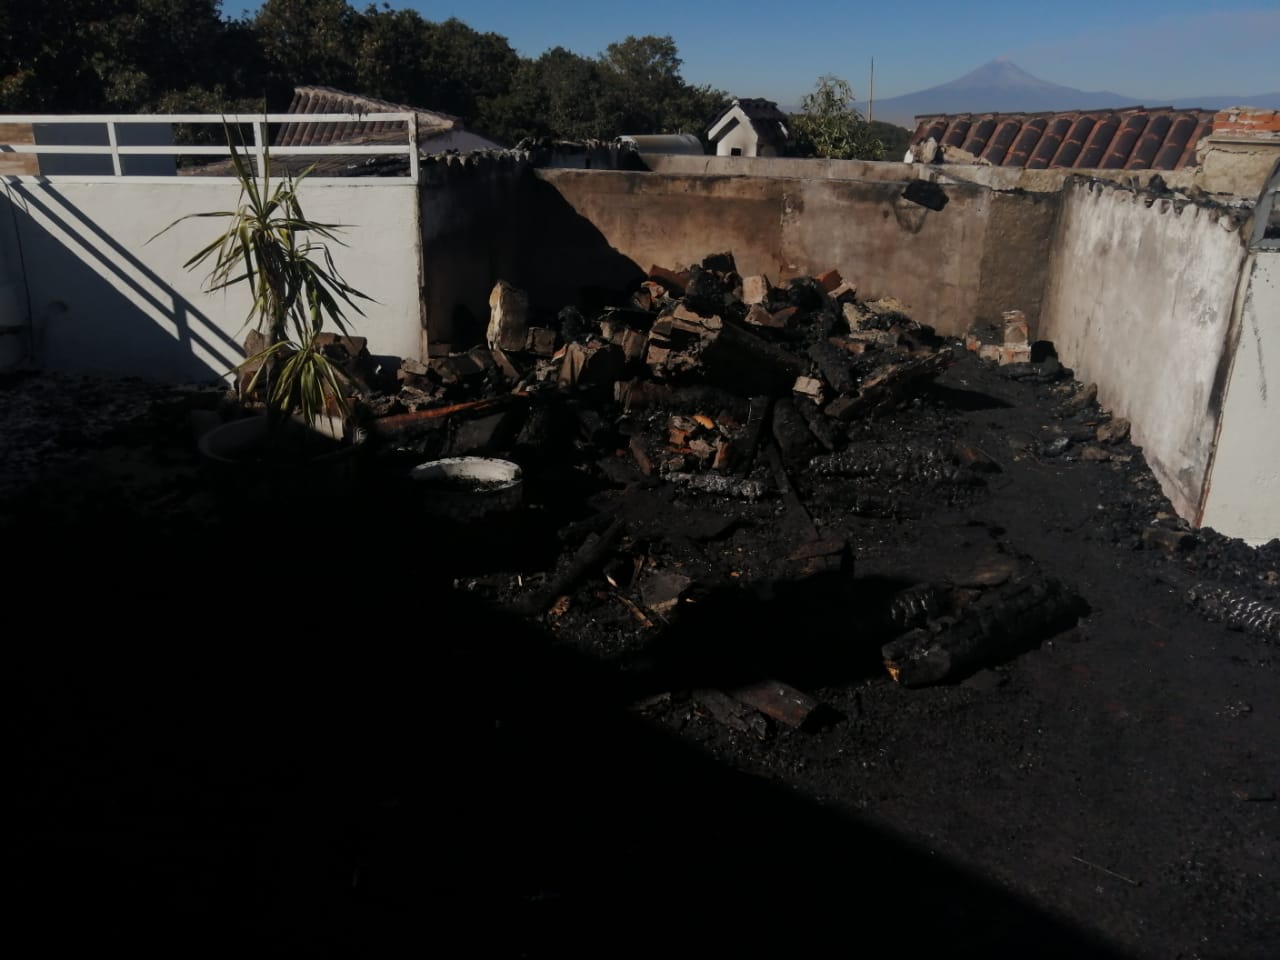 “Incendio en mi domicilio fue un atentado” : Erazo Juárez; Bomberos desmienten versión